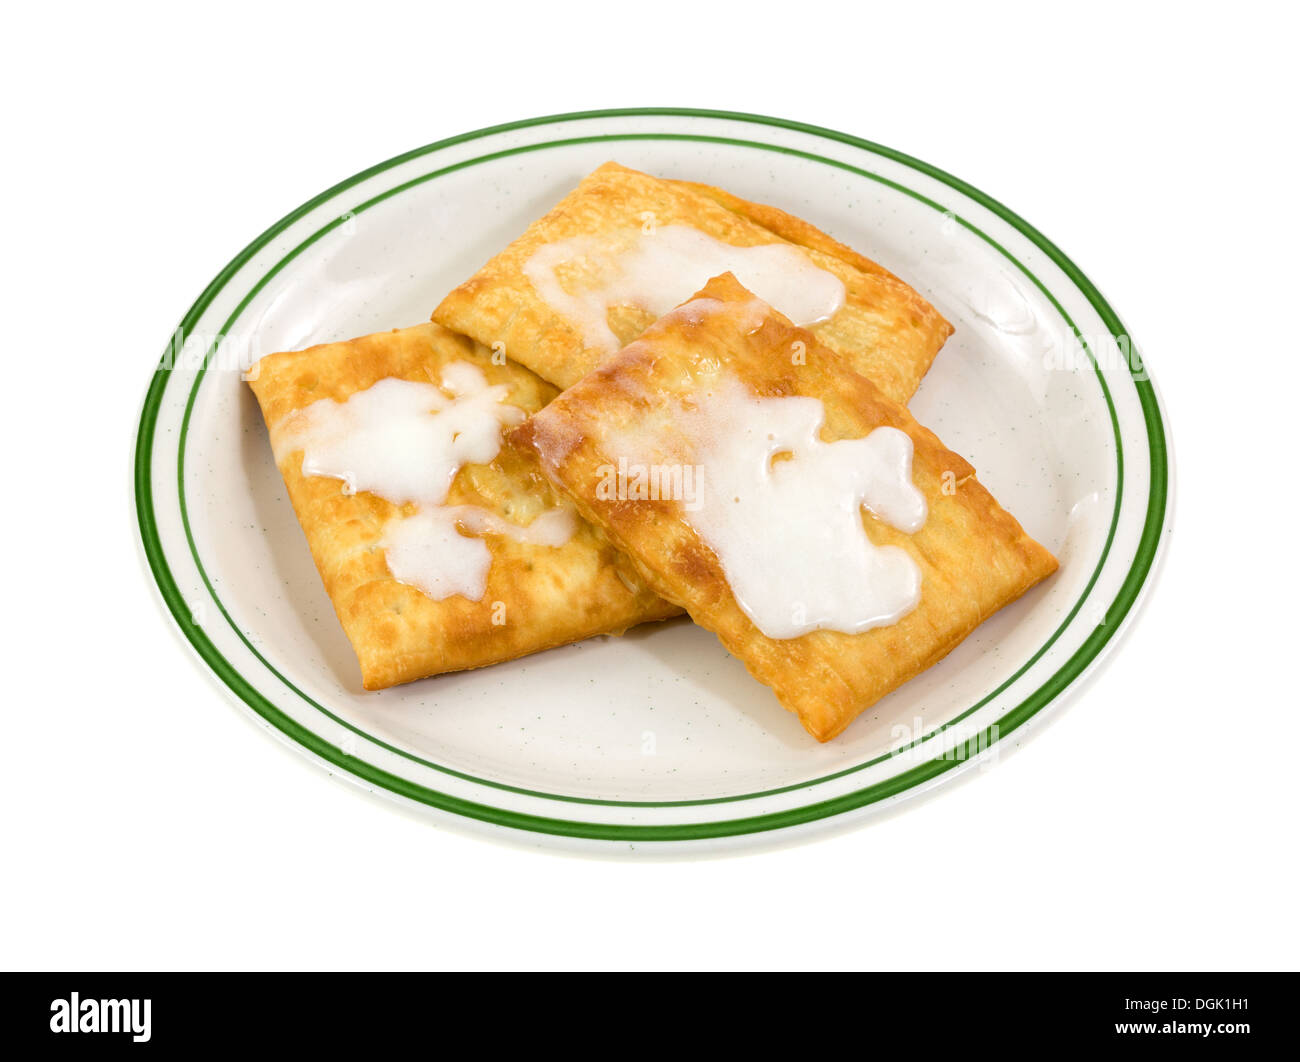 Un verde listati piastra con tre cucinato al momento tostapane pasticcini glassati con la glassa di formaggio cremoso su uno sfondo bianco. Foto Stock